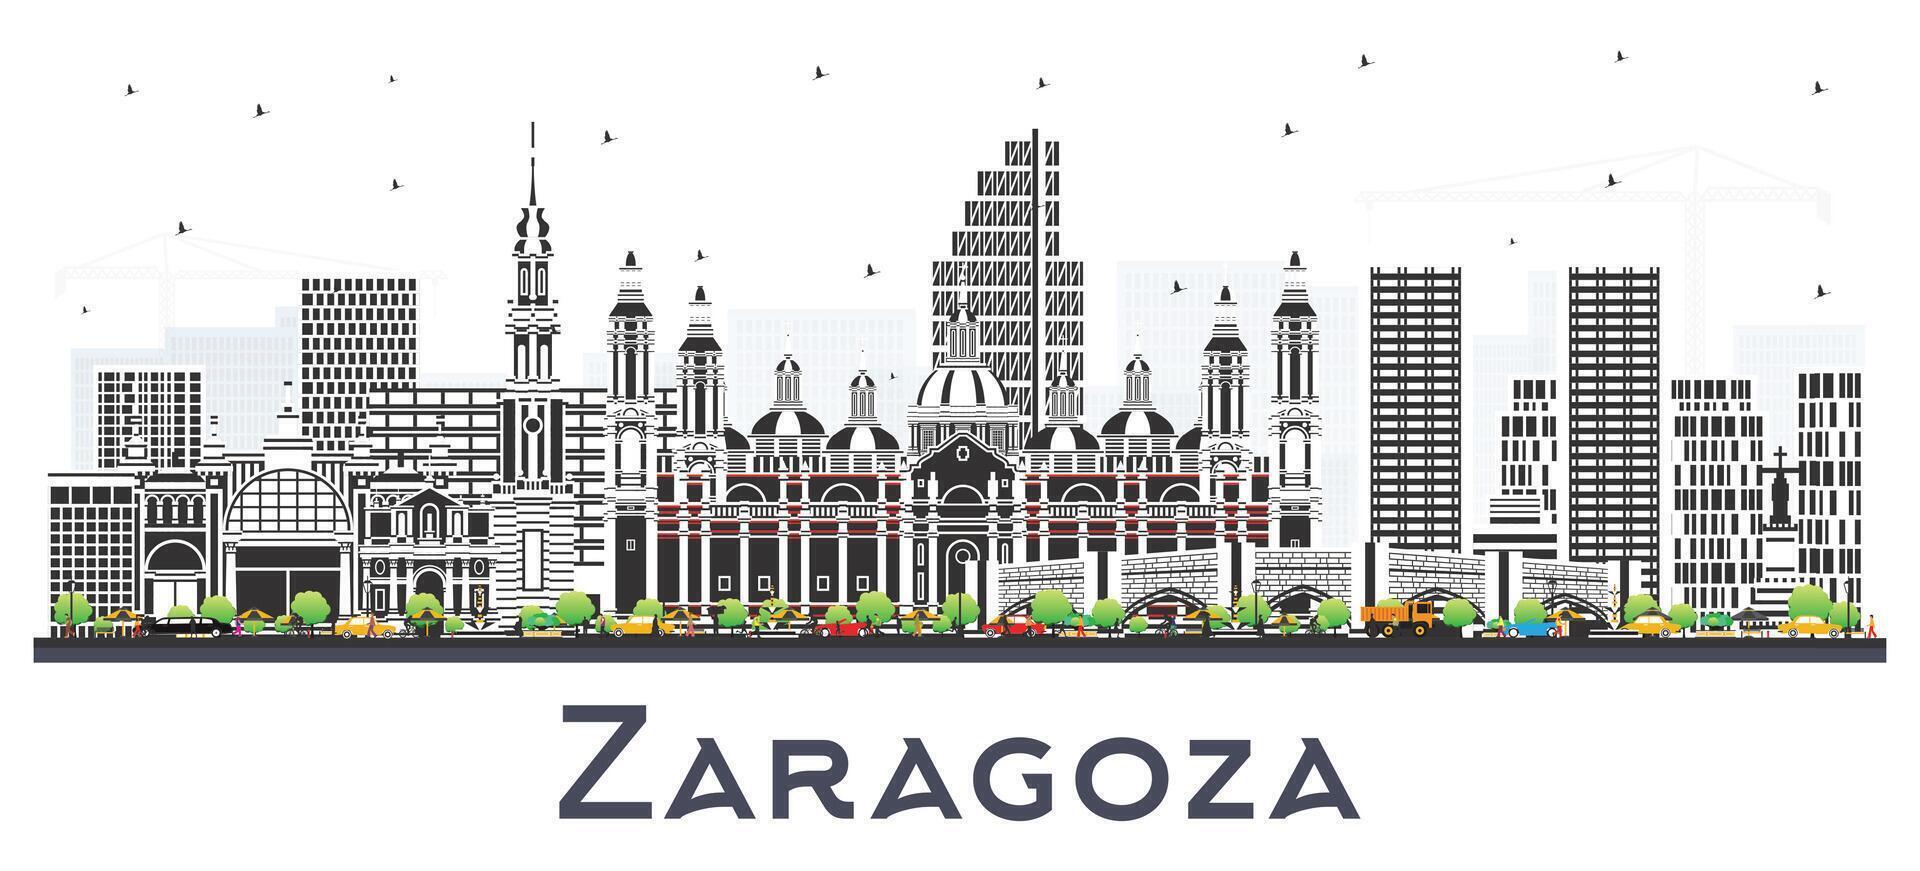 zaragoza Spanien stad horisont med Färg byggnader isolerat på vit. zaragoza stadsbild med landmärken. företag resa och turism begrepp med historisk arkitektur. vektor